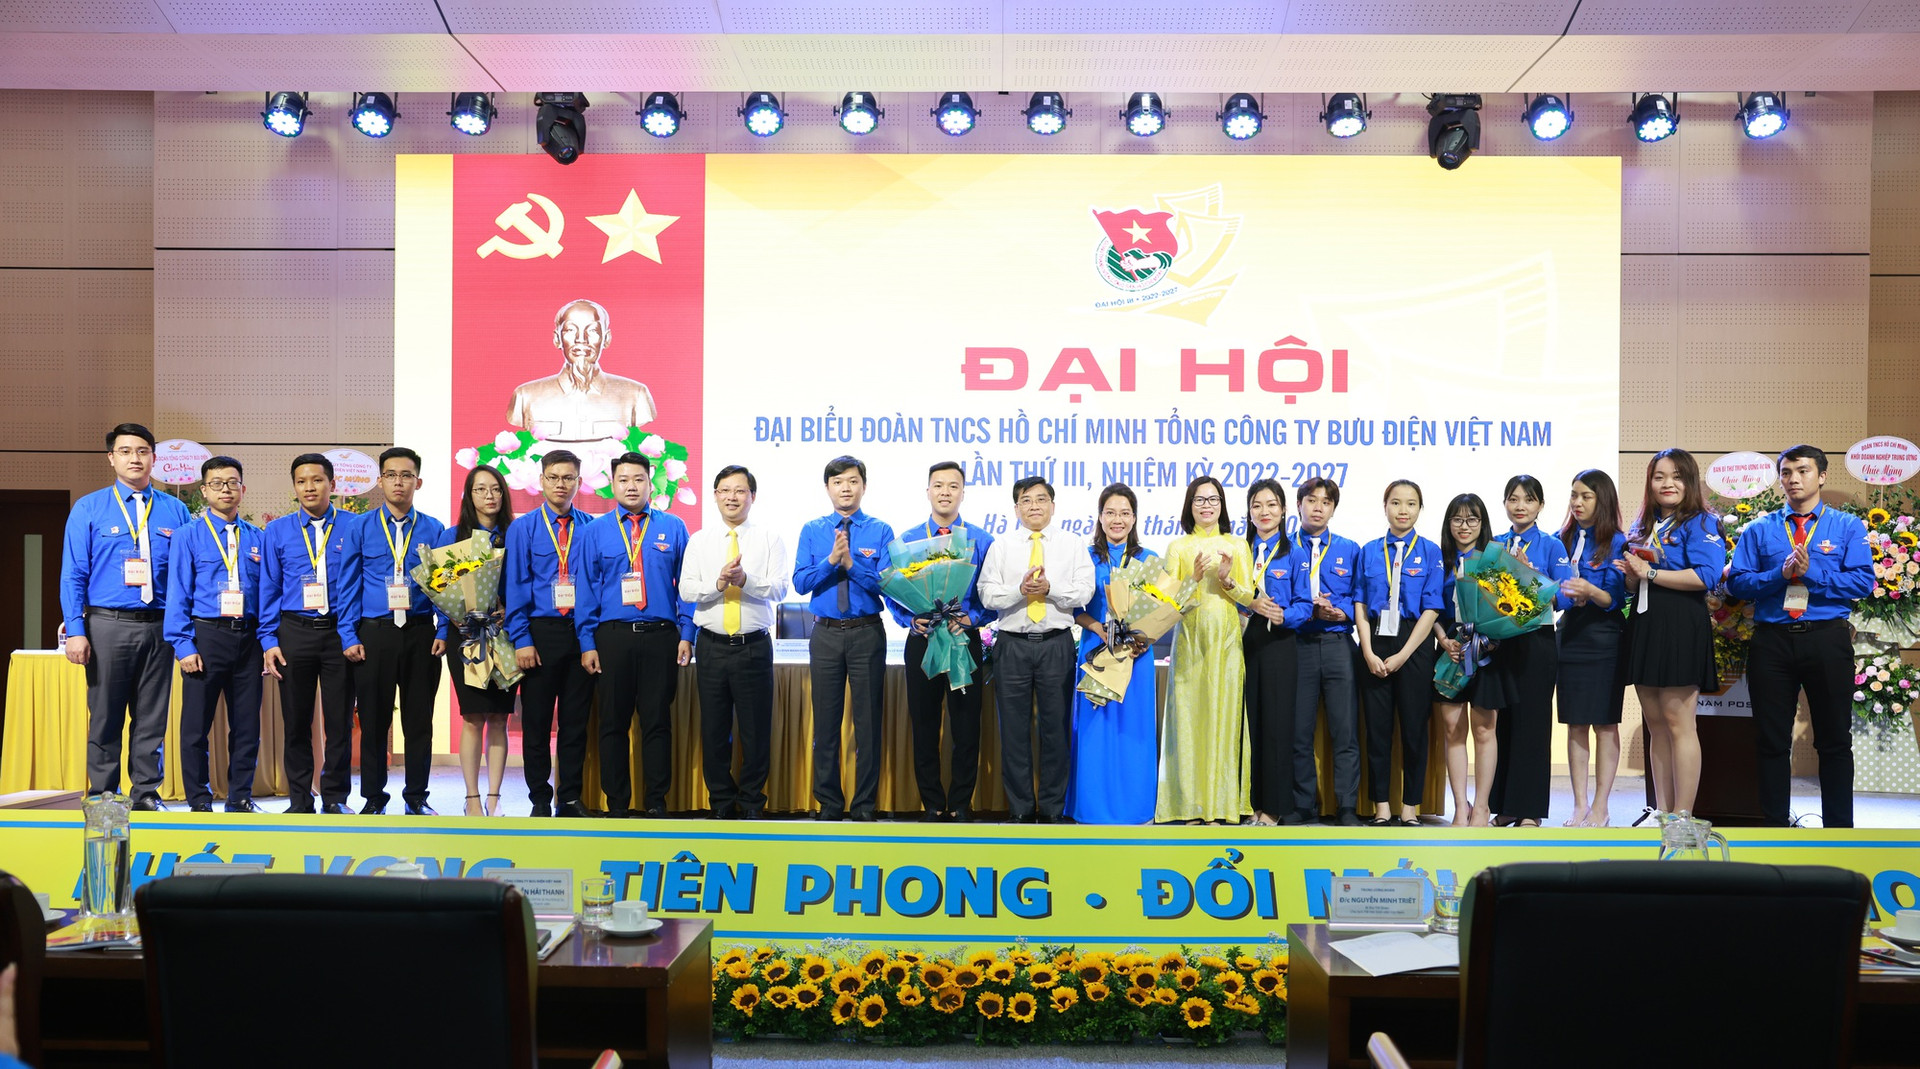 Thanh niên Bưu điện Việt Nam là đội ngũ nòng cốt triển khai nhiều đề án số - Ảnh 3.